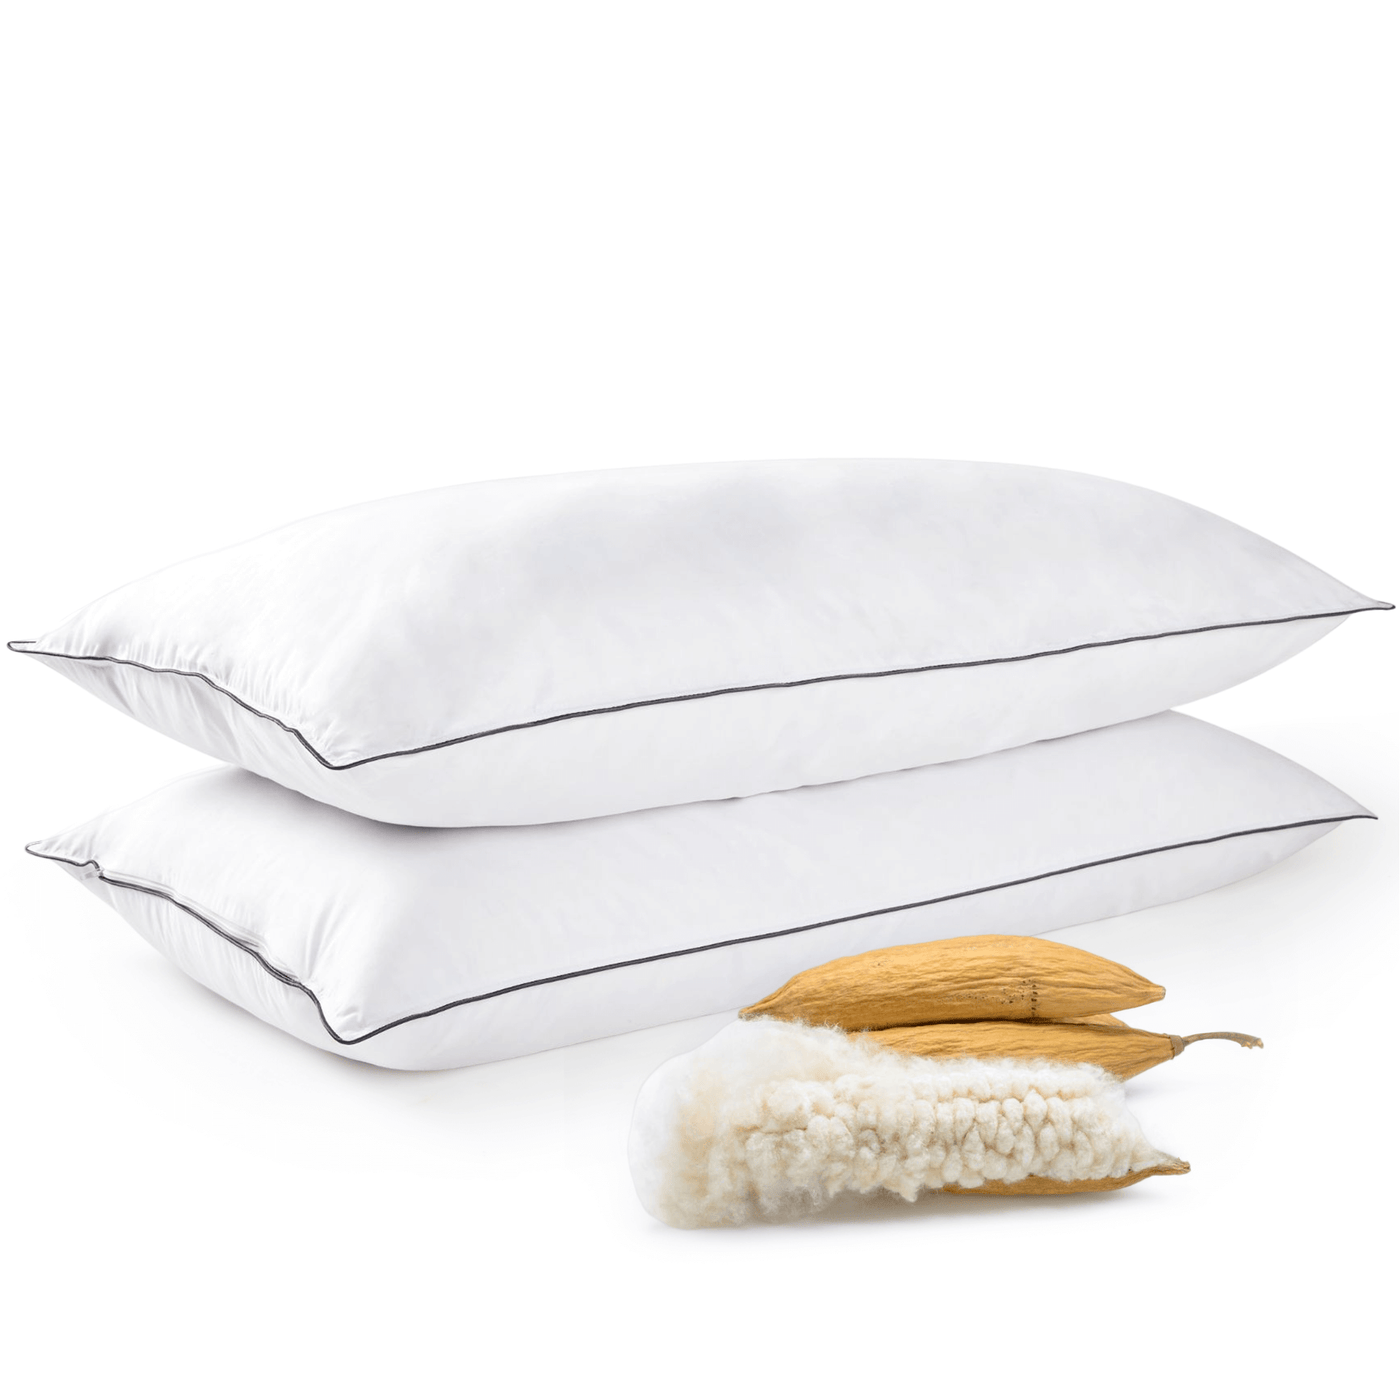 Pillow Insert 16x16 Inches Pillow Form Cushion Cover Insert Pillow Filler  Decorative Pillows Fiberfill Stuffing Bed Pillows Sham 